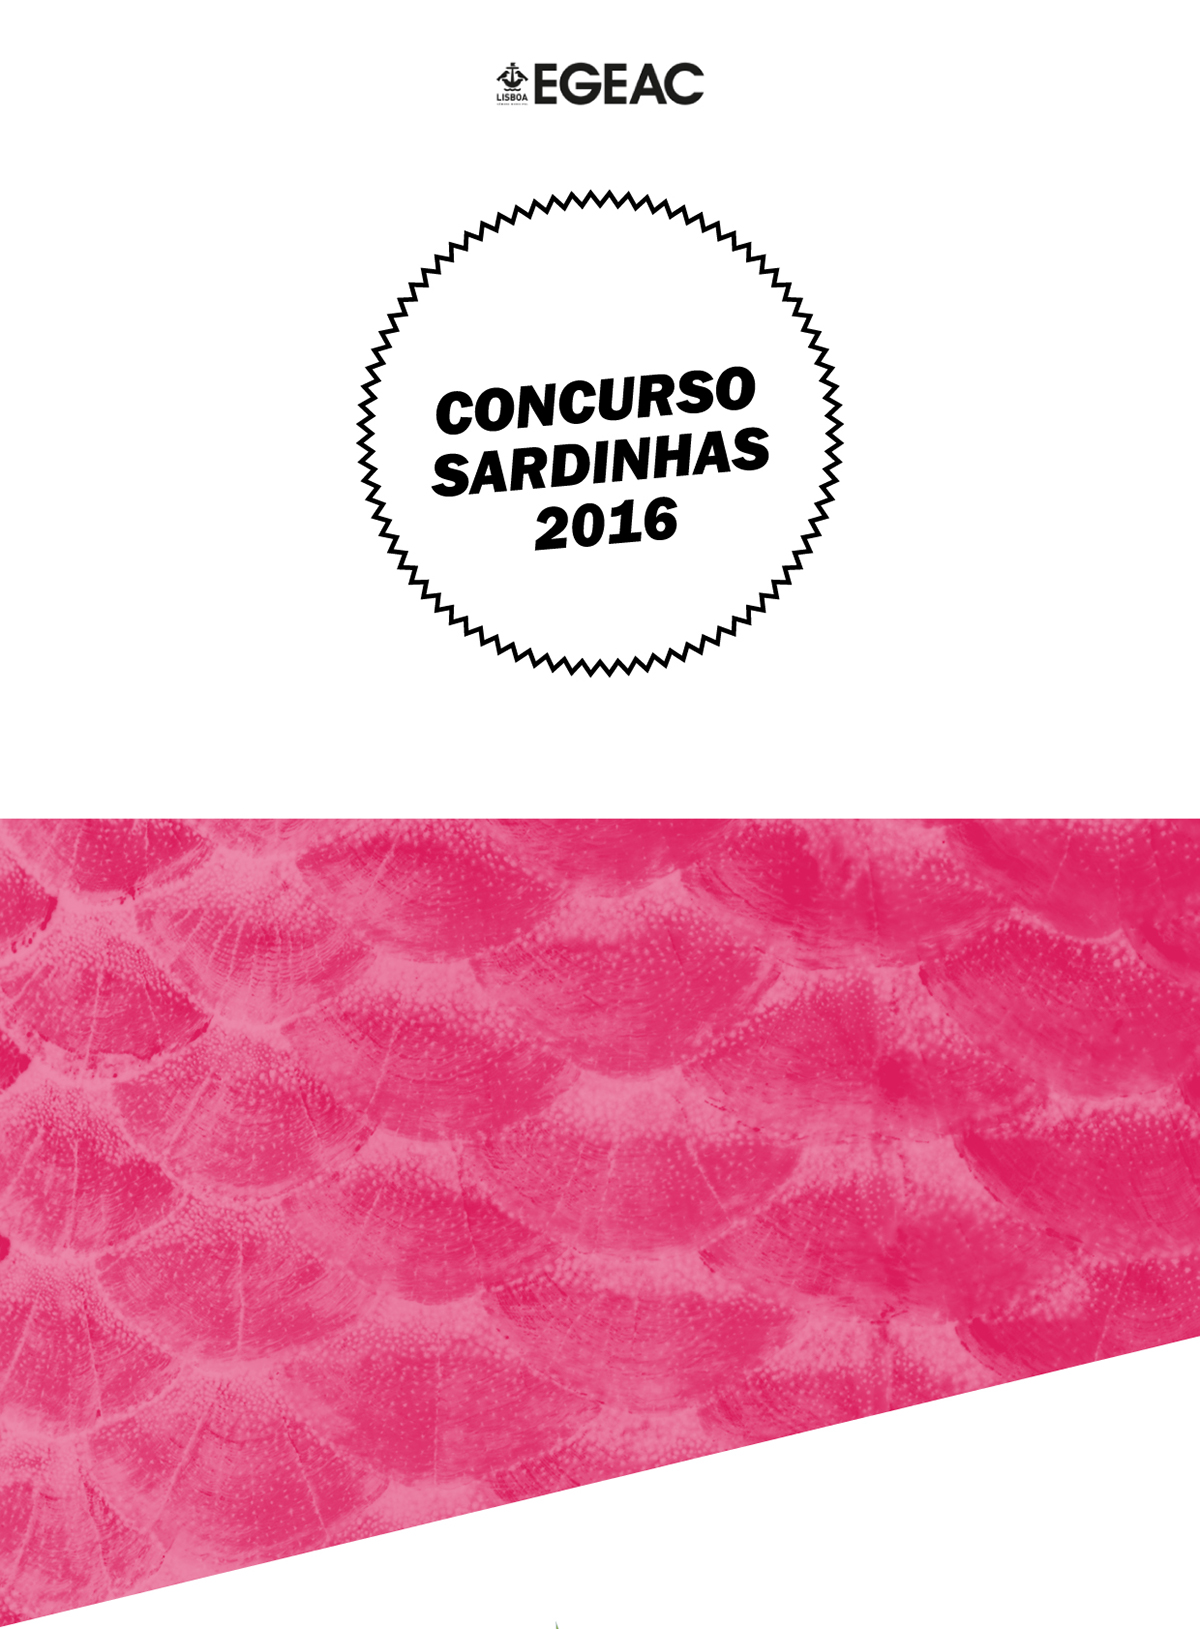 Concurso sardinha festas de lisboa '16 sardine Lisbon Carmen Miranda